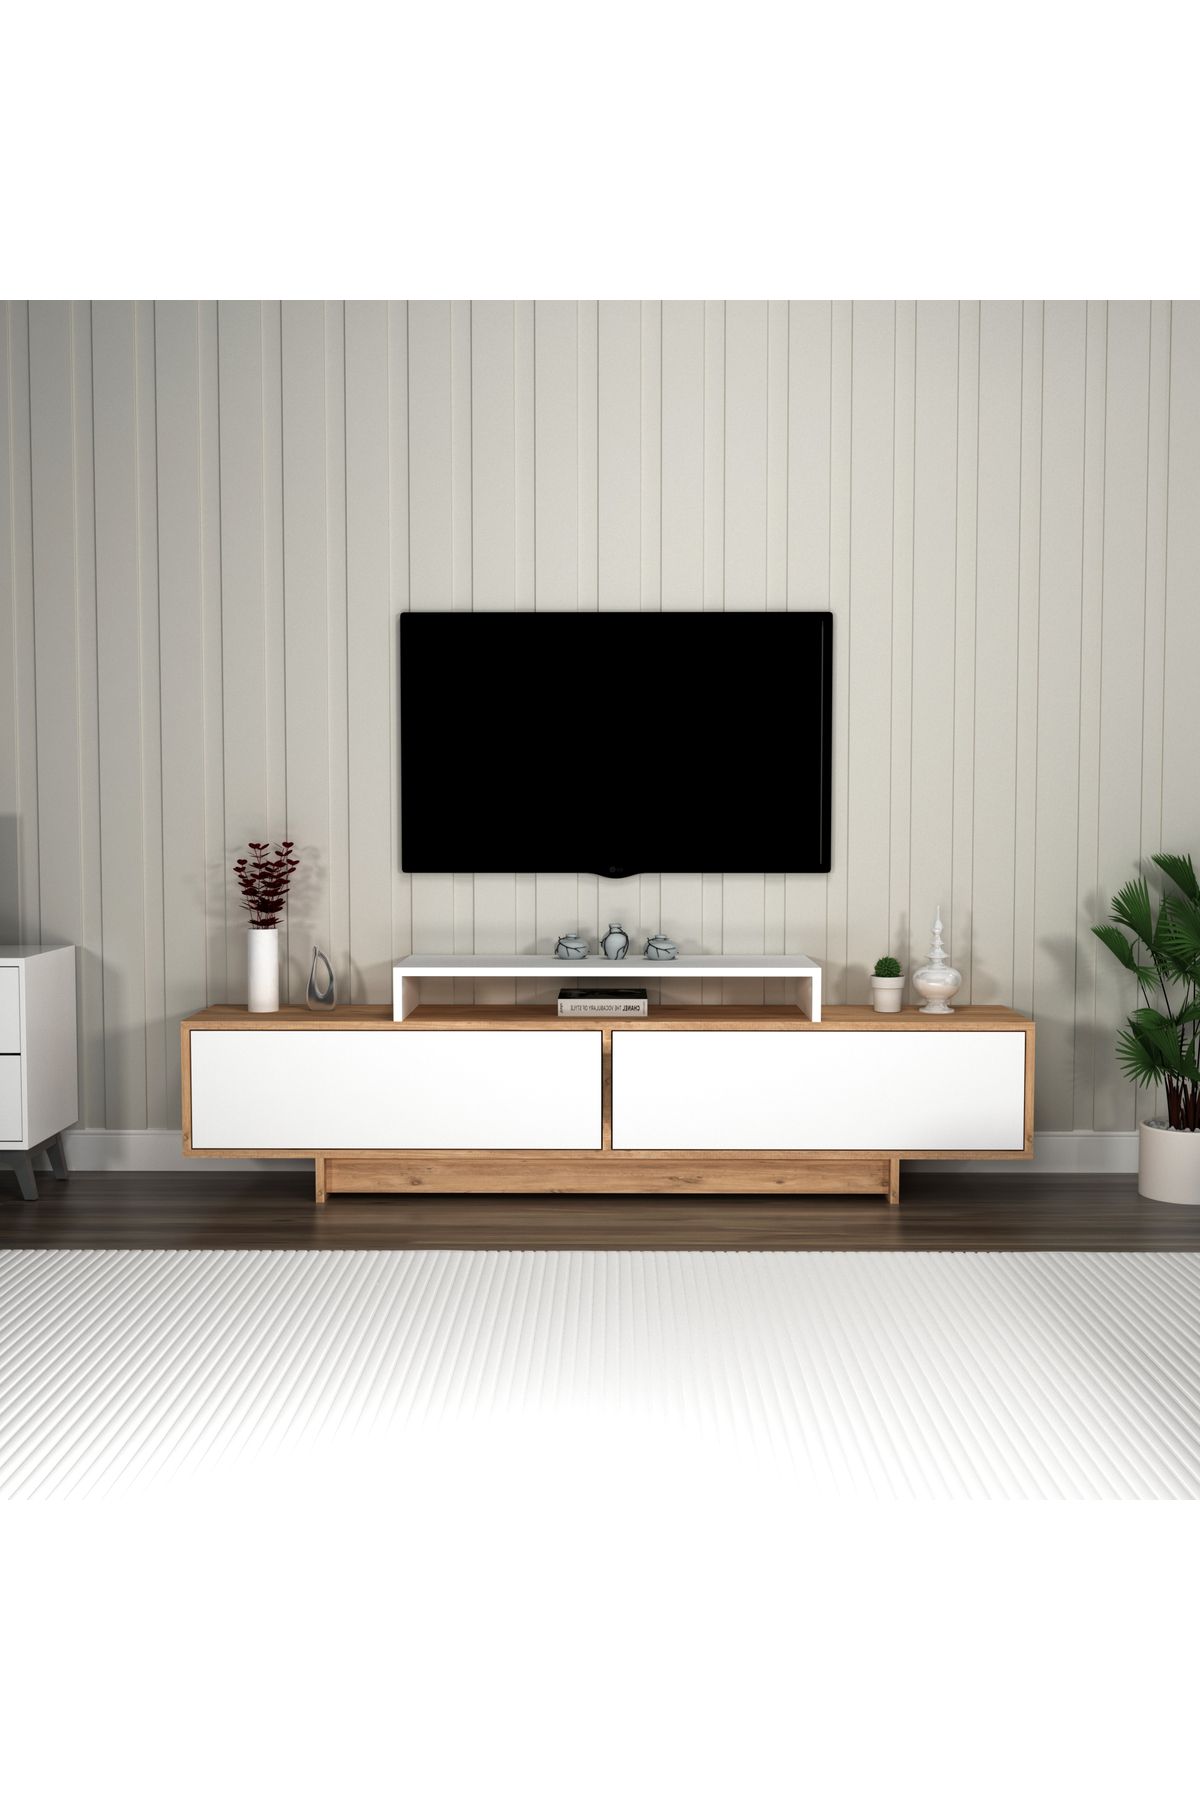 Arnetti Tv Sehpası, 2 Kapaklı Raflı Dekoratif GRASYAS Televizyon Sehpası, Atlantik Çam Beyaz